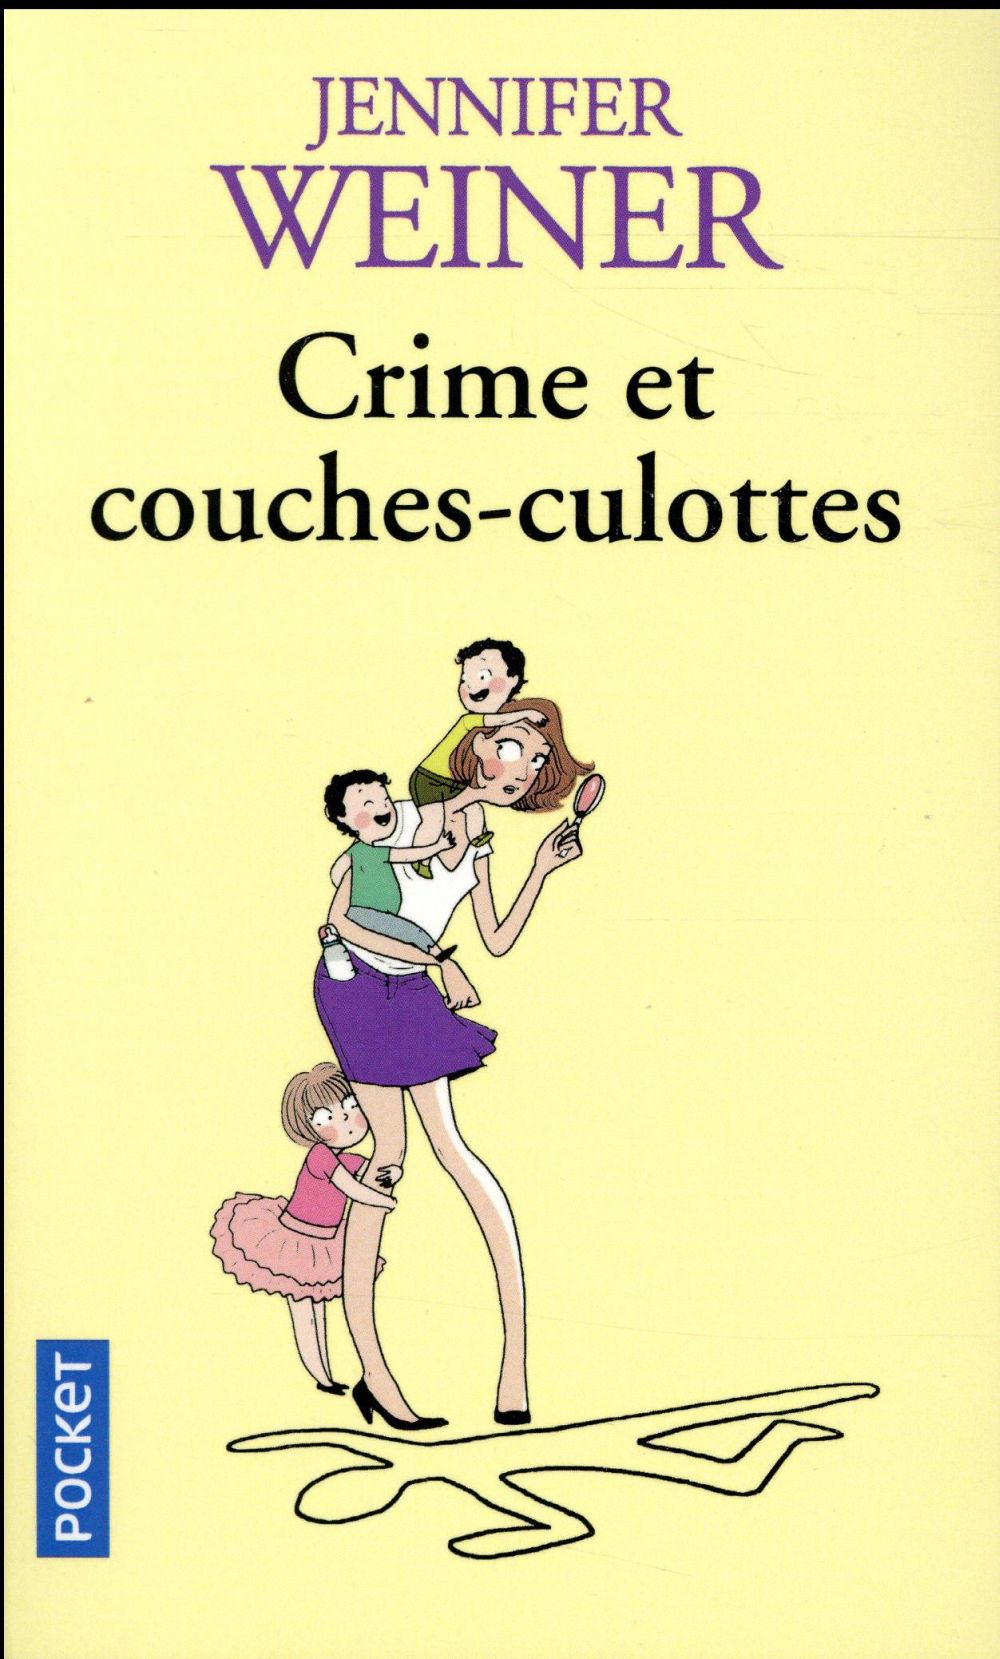 CRIME ET COUCHES-CULOTTES